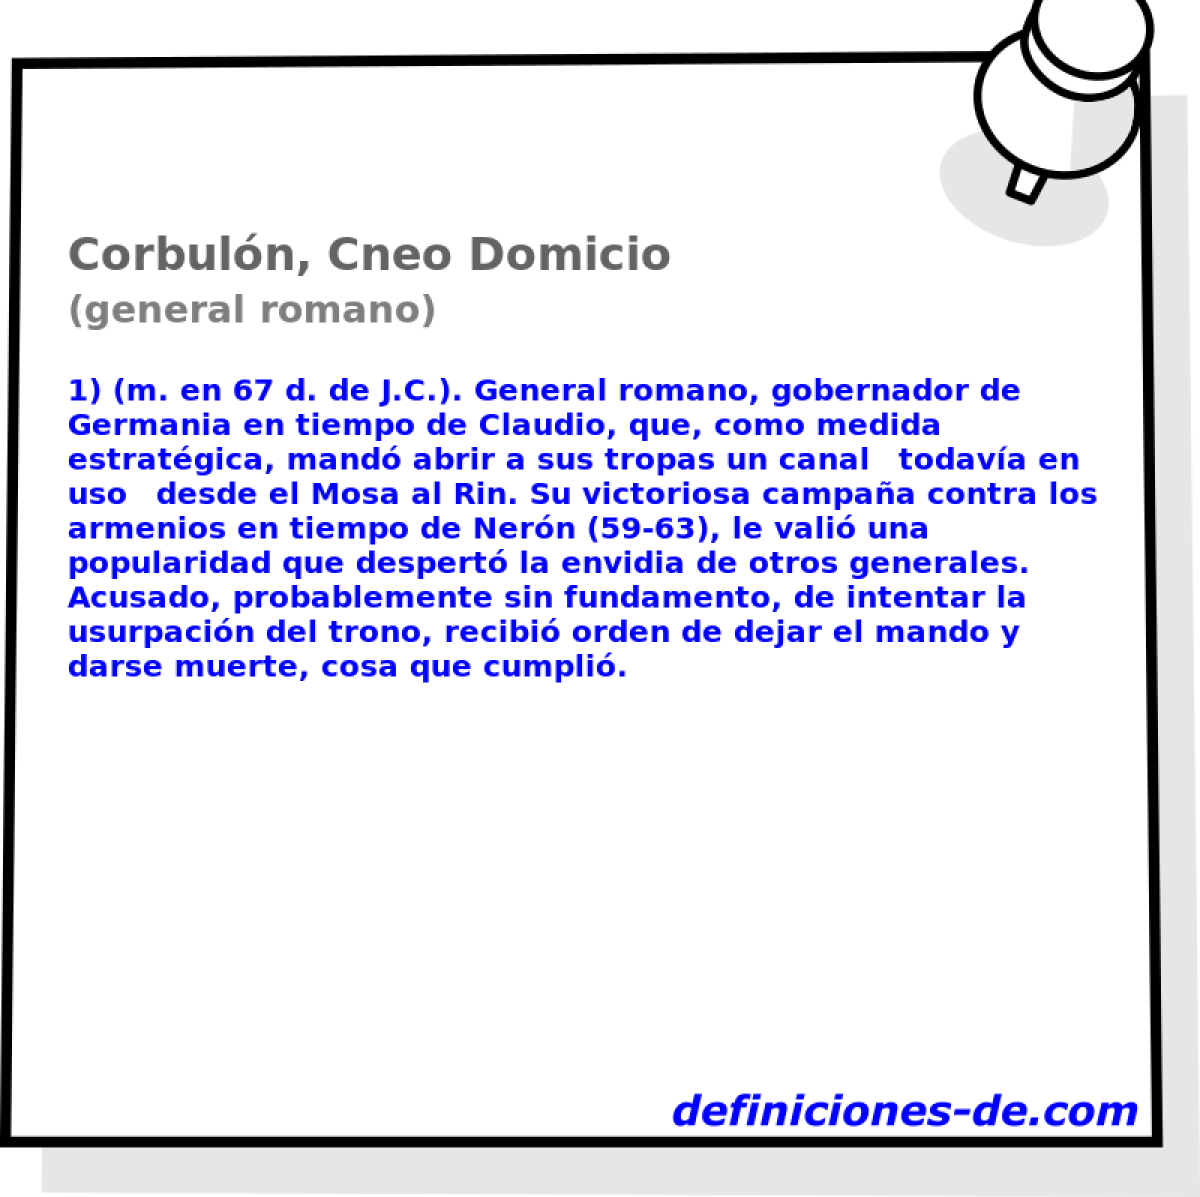 Corbuln, Cneo Domicio (general romano)